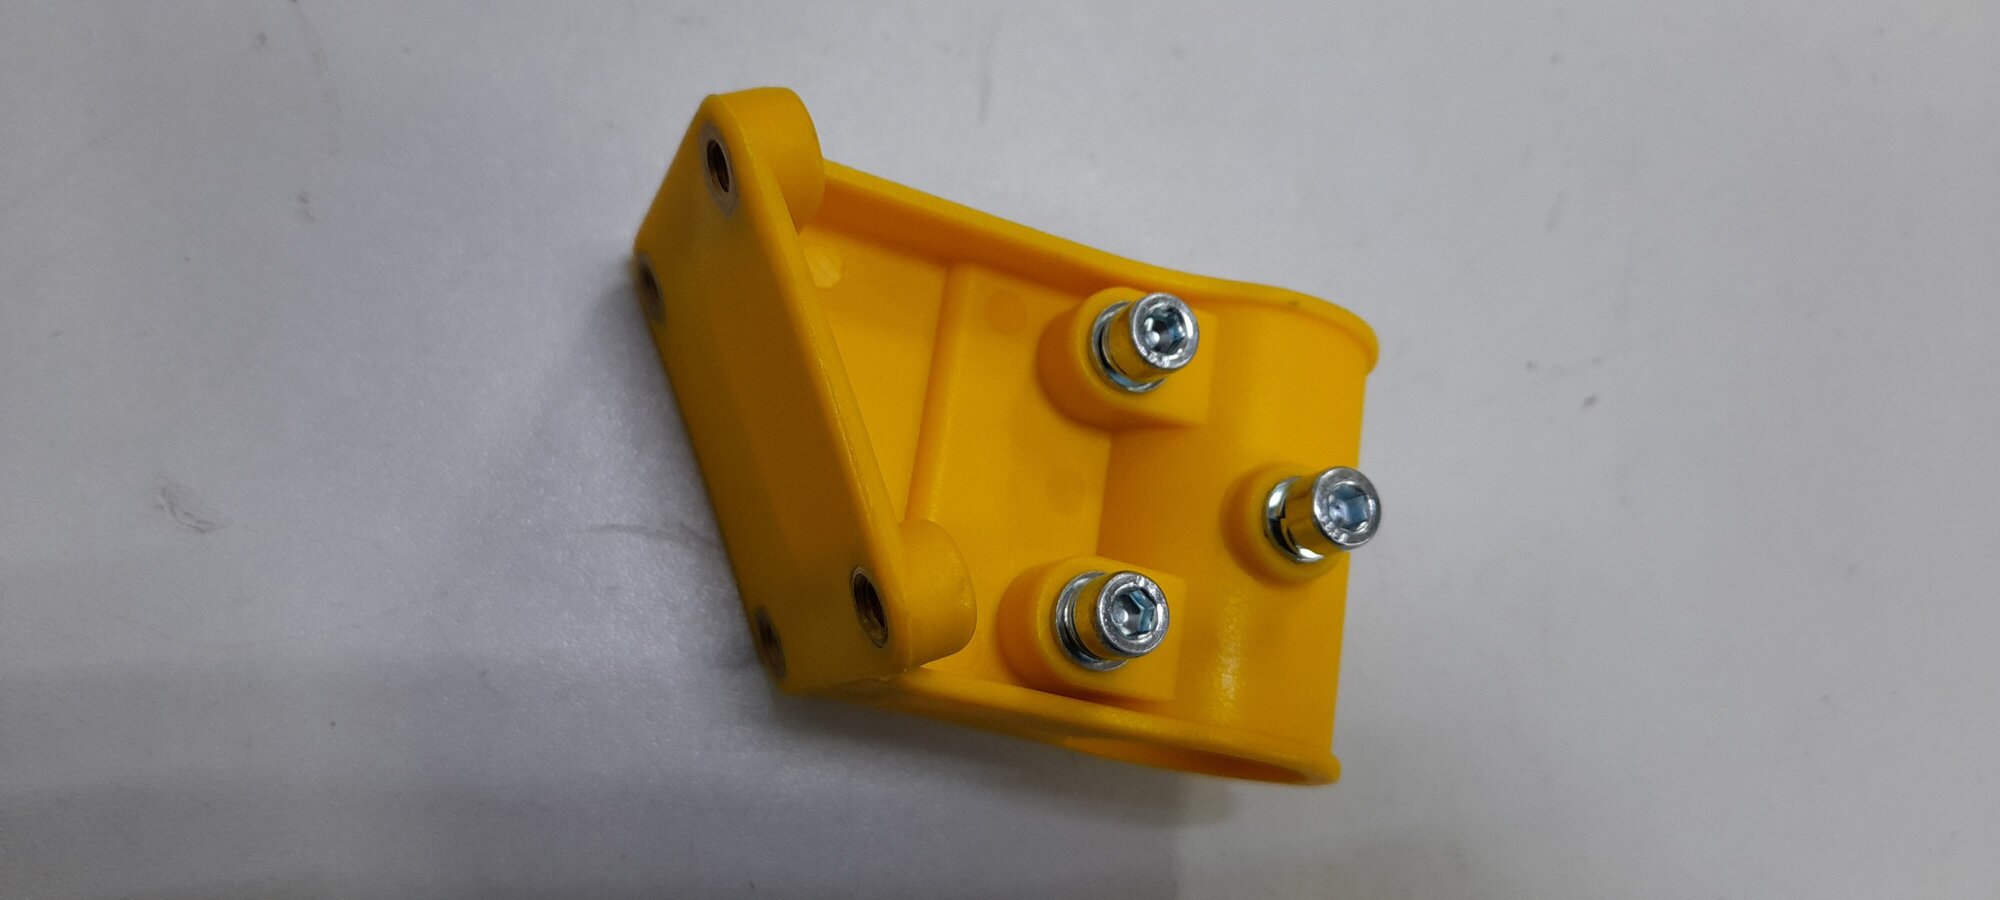 Крепление кронштейн кожуха защитного редуктора жёлтый бензокосы триммера 26-52 куб. Диаметр штанги 26 мм